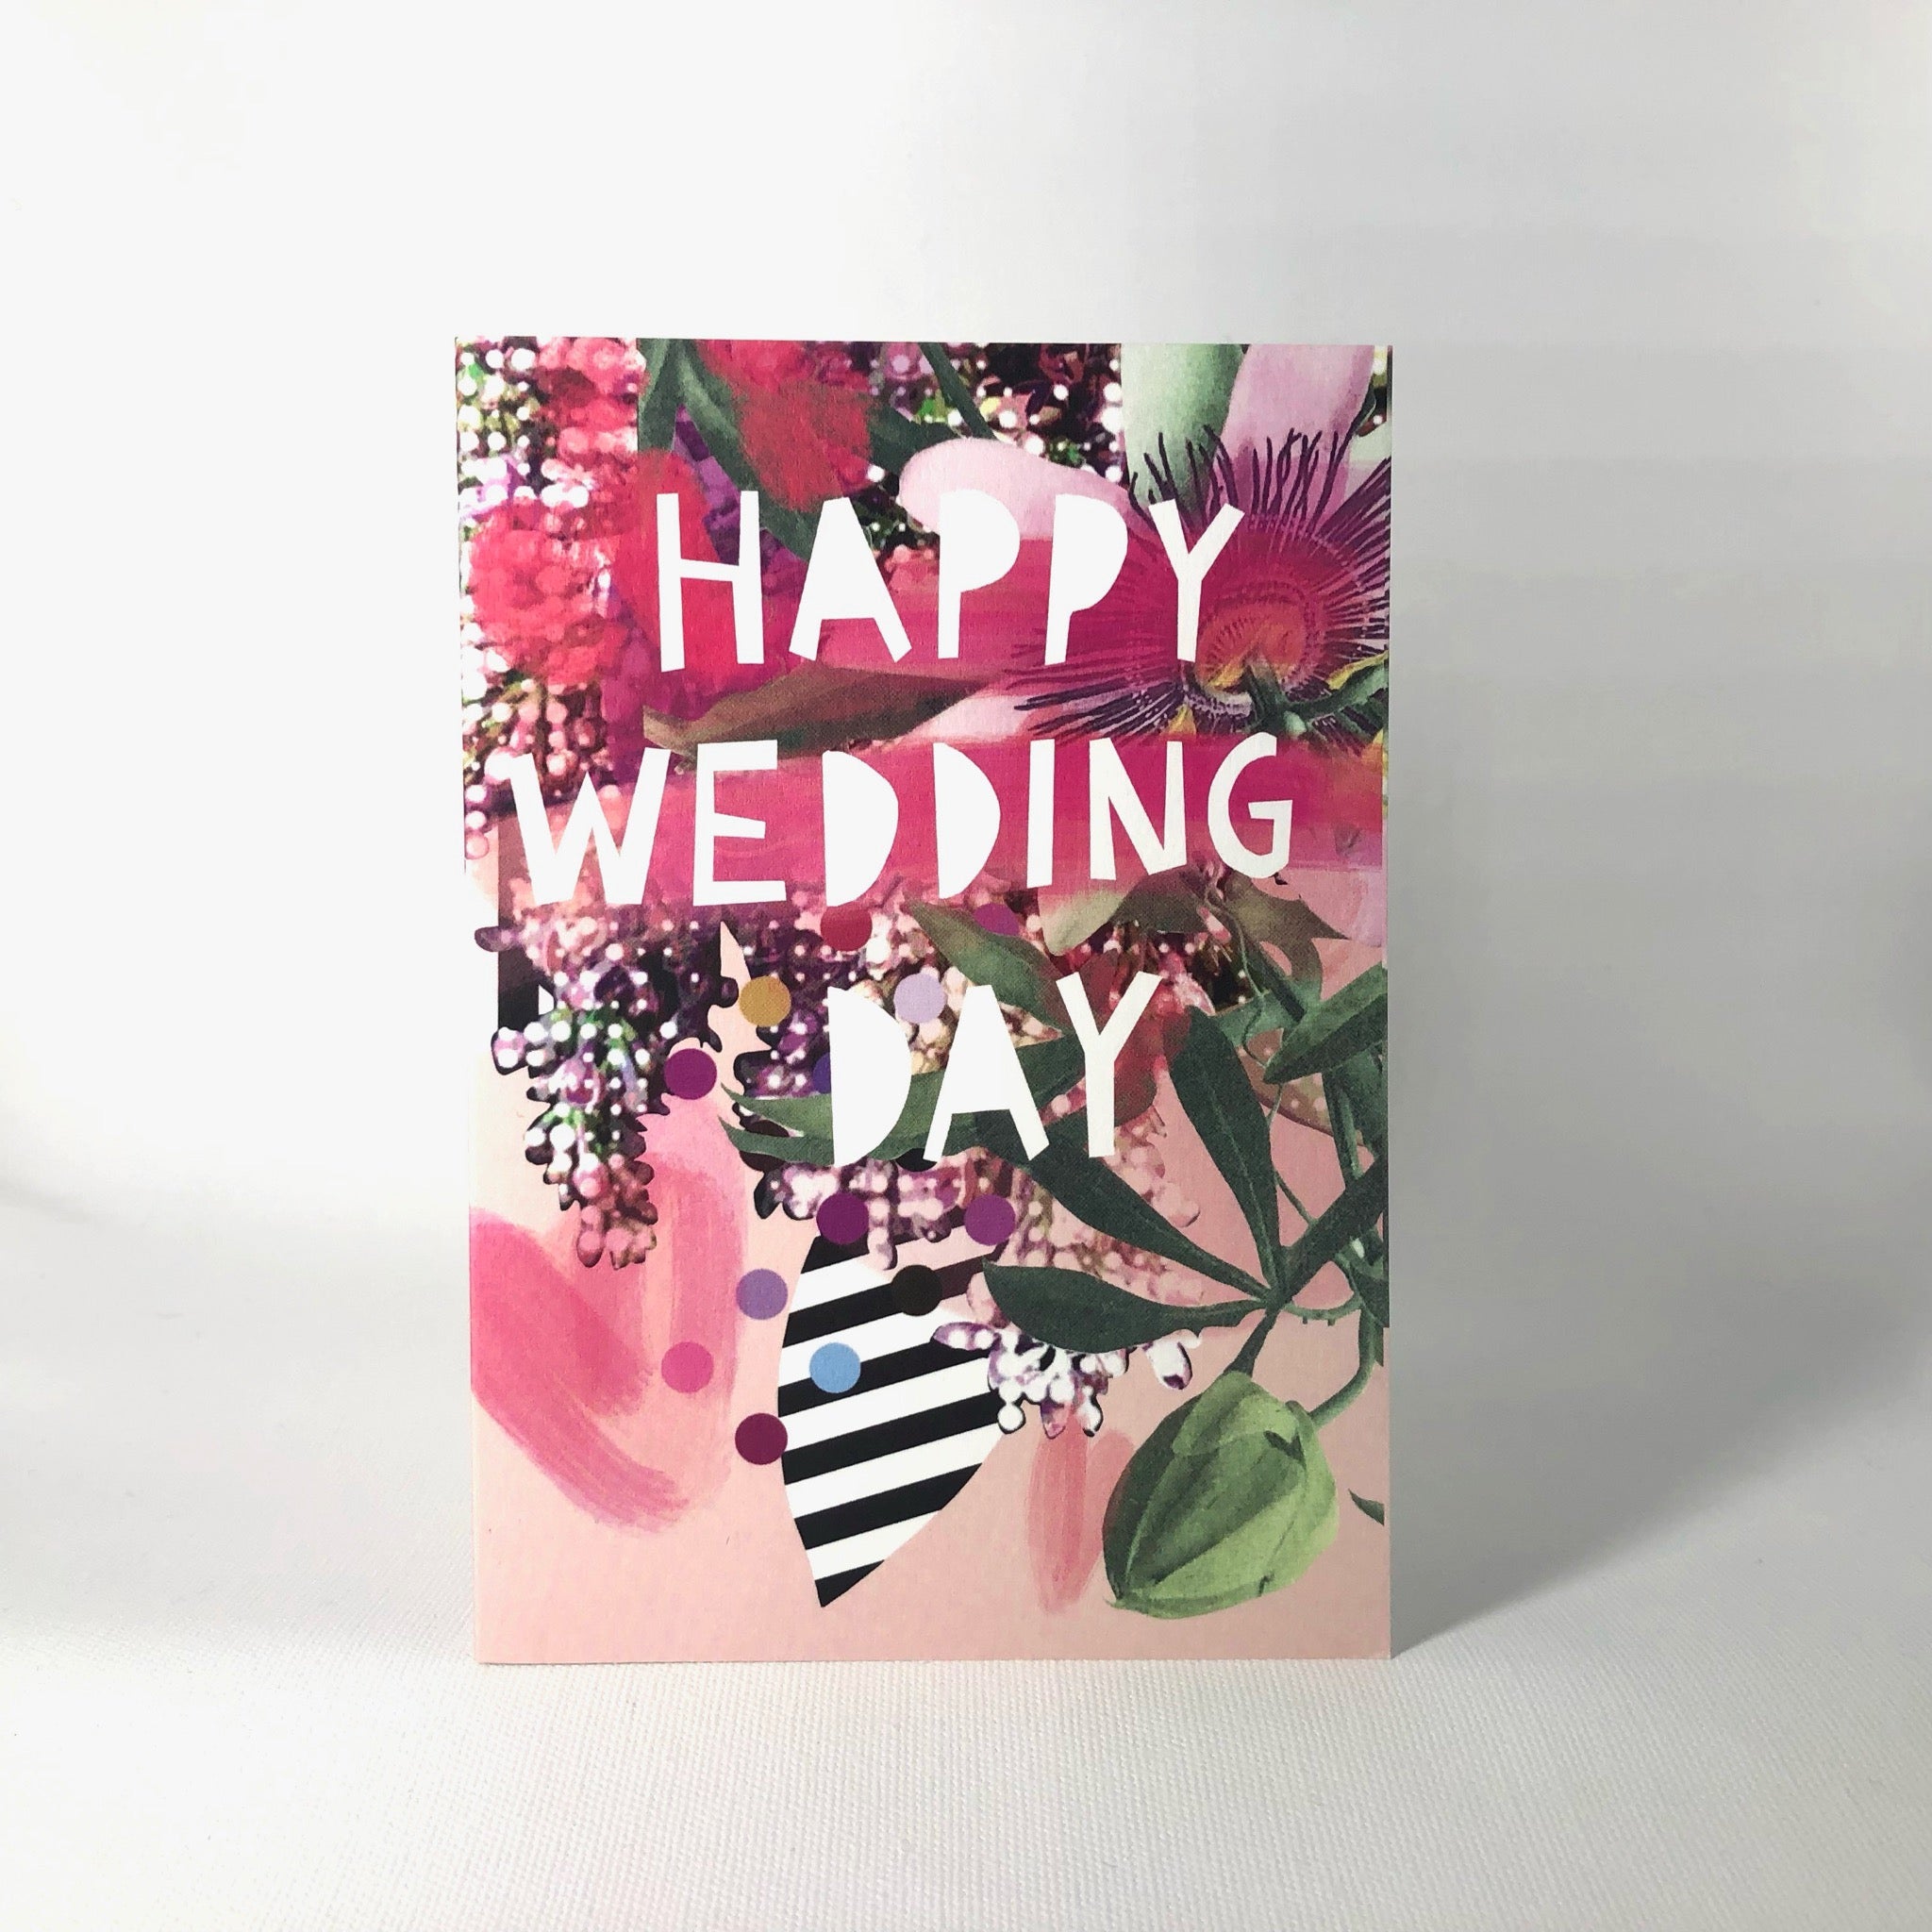 Happy Wedding Day Greeting Card